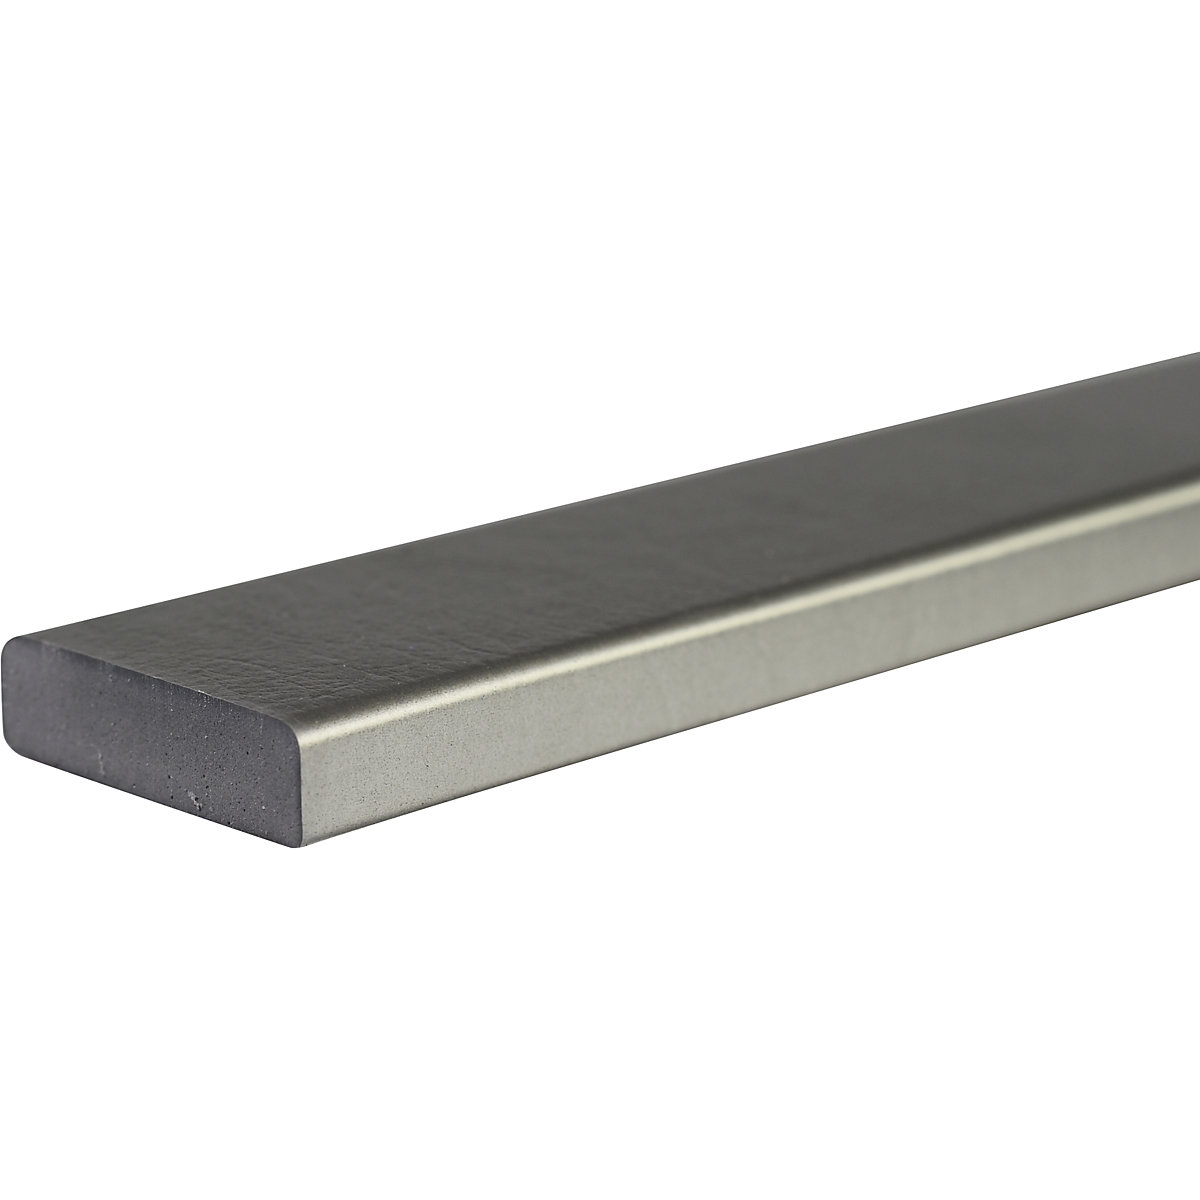 Zabezpieczenie powierzchni Knuffi® – SHG, typ S, szt. 1 m, srebrny-20